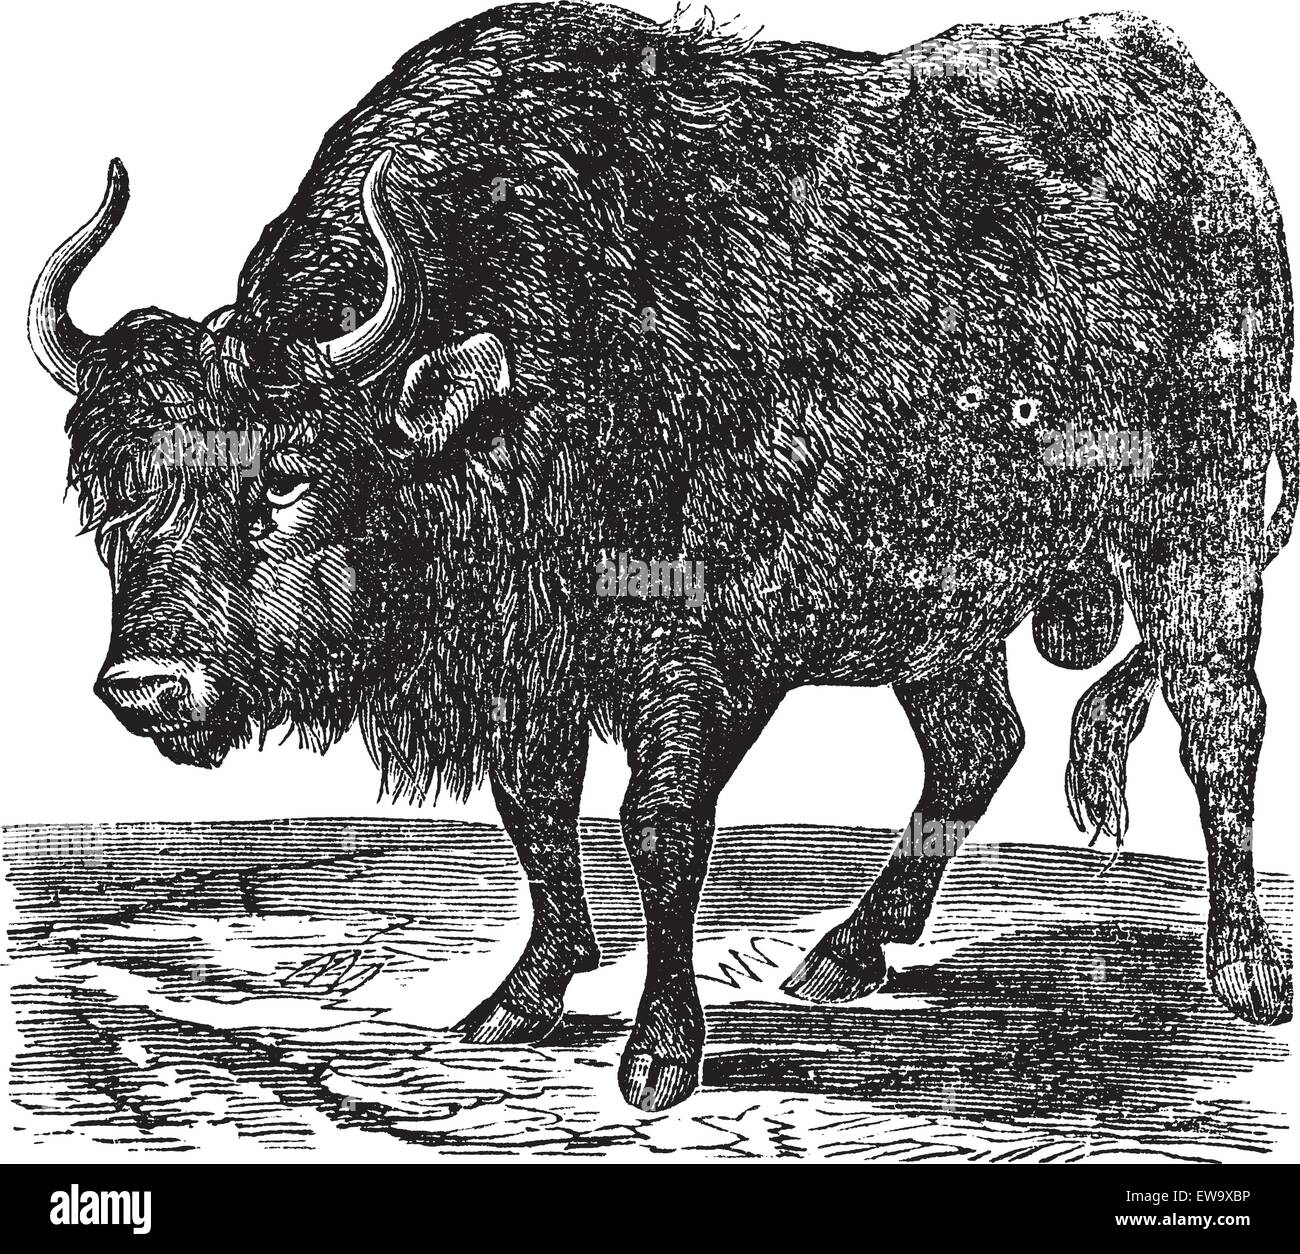 Der amerikanische Bison, Bison oder American Buffalo. Vintage Gravur. Alte gravierte Darstellung eines American Buffalo in Nordamerika gefunden. Stock Vektor